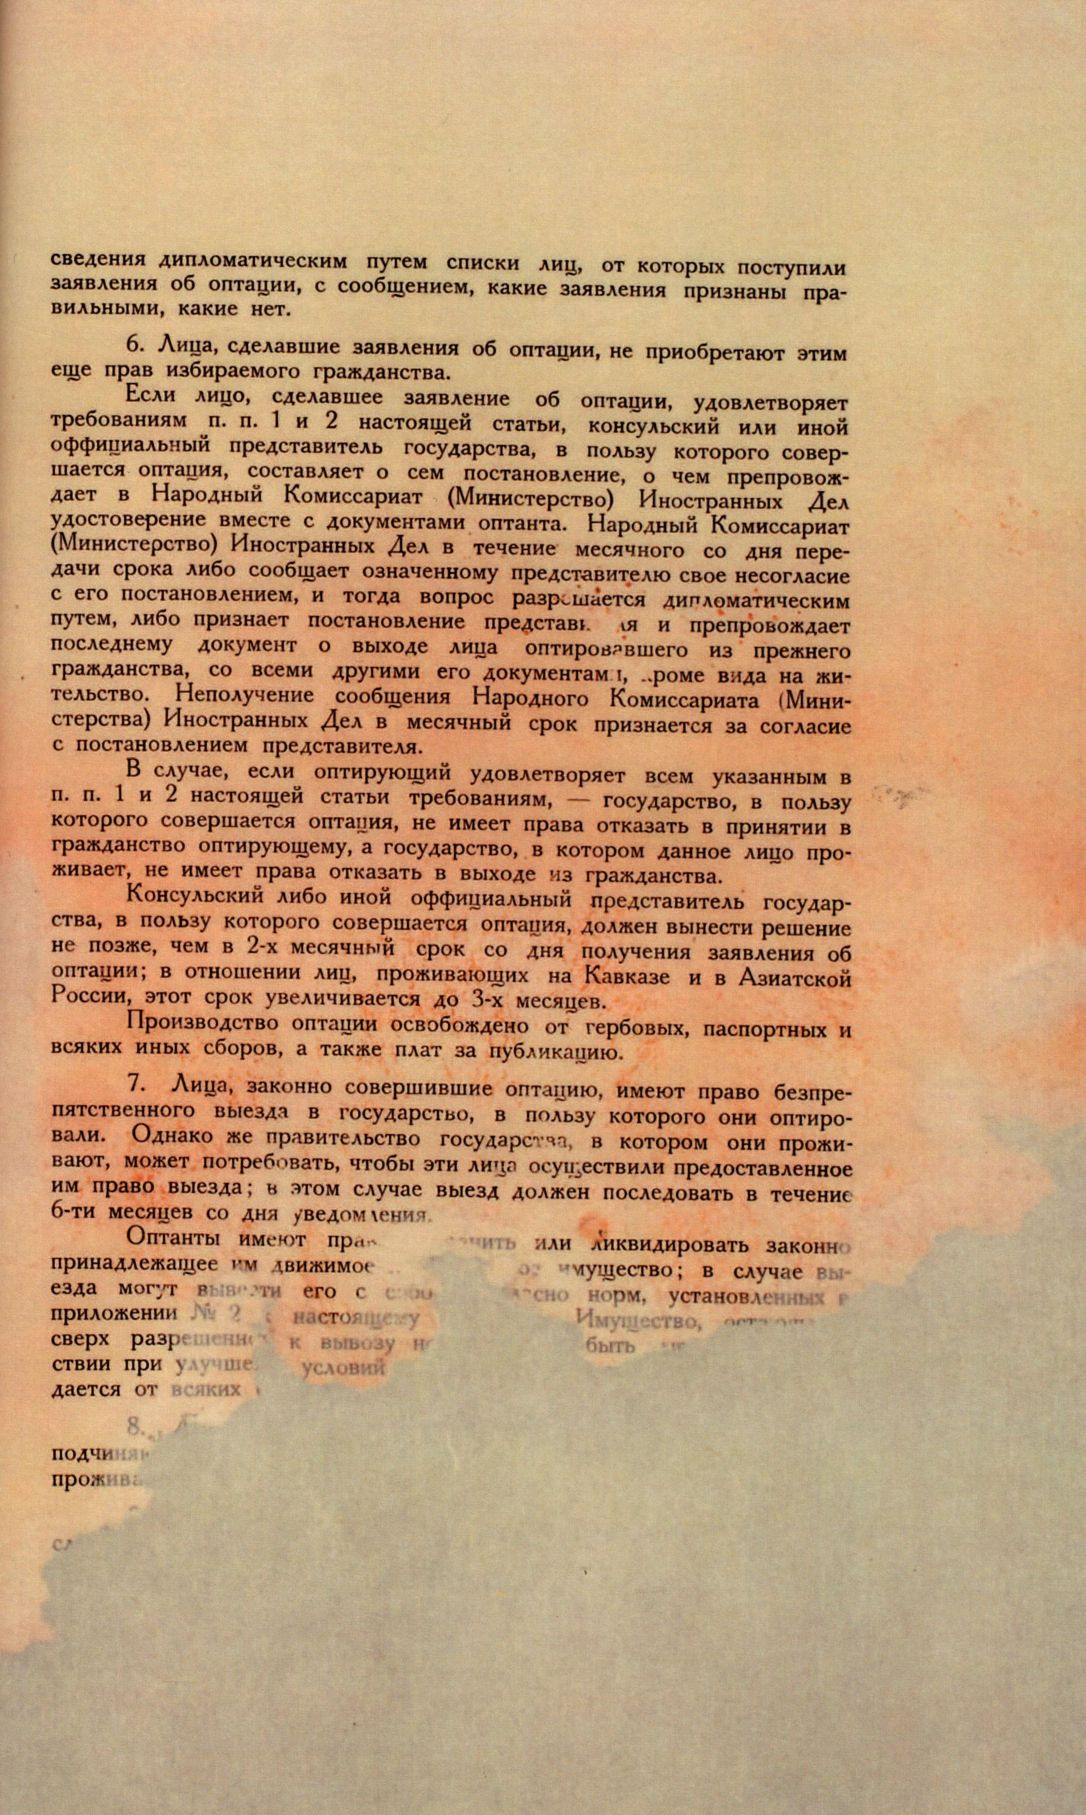 Traktat Pokoju między Polską a Rosją i Ukrainą podpisany w Rydze dnia 18 marca 1921 roku, s. 73, MSZ, sygn. 6739.